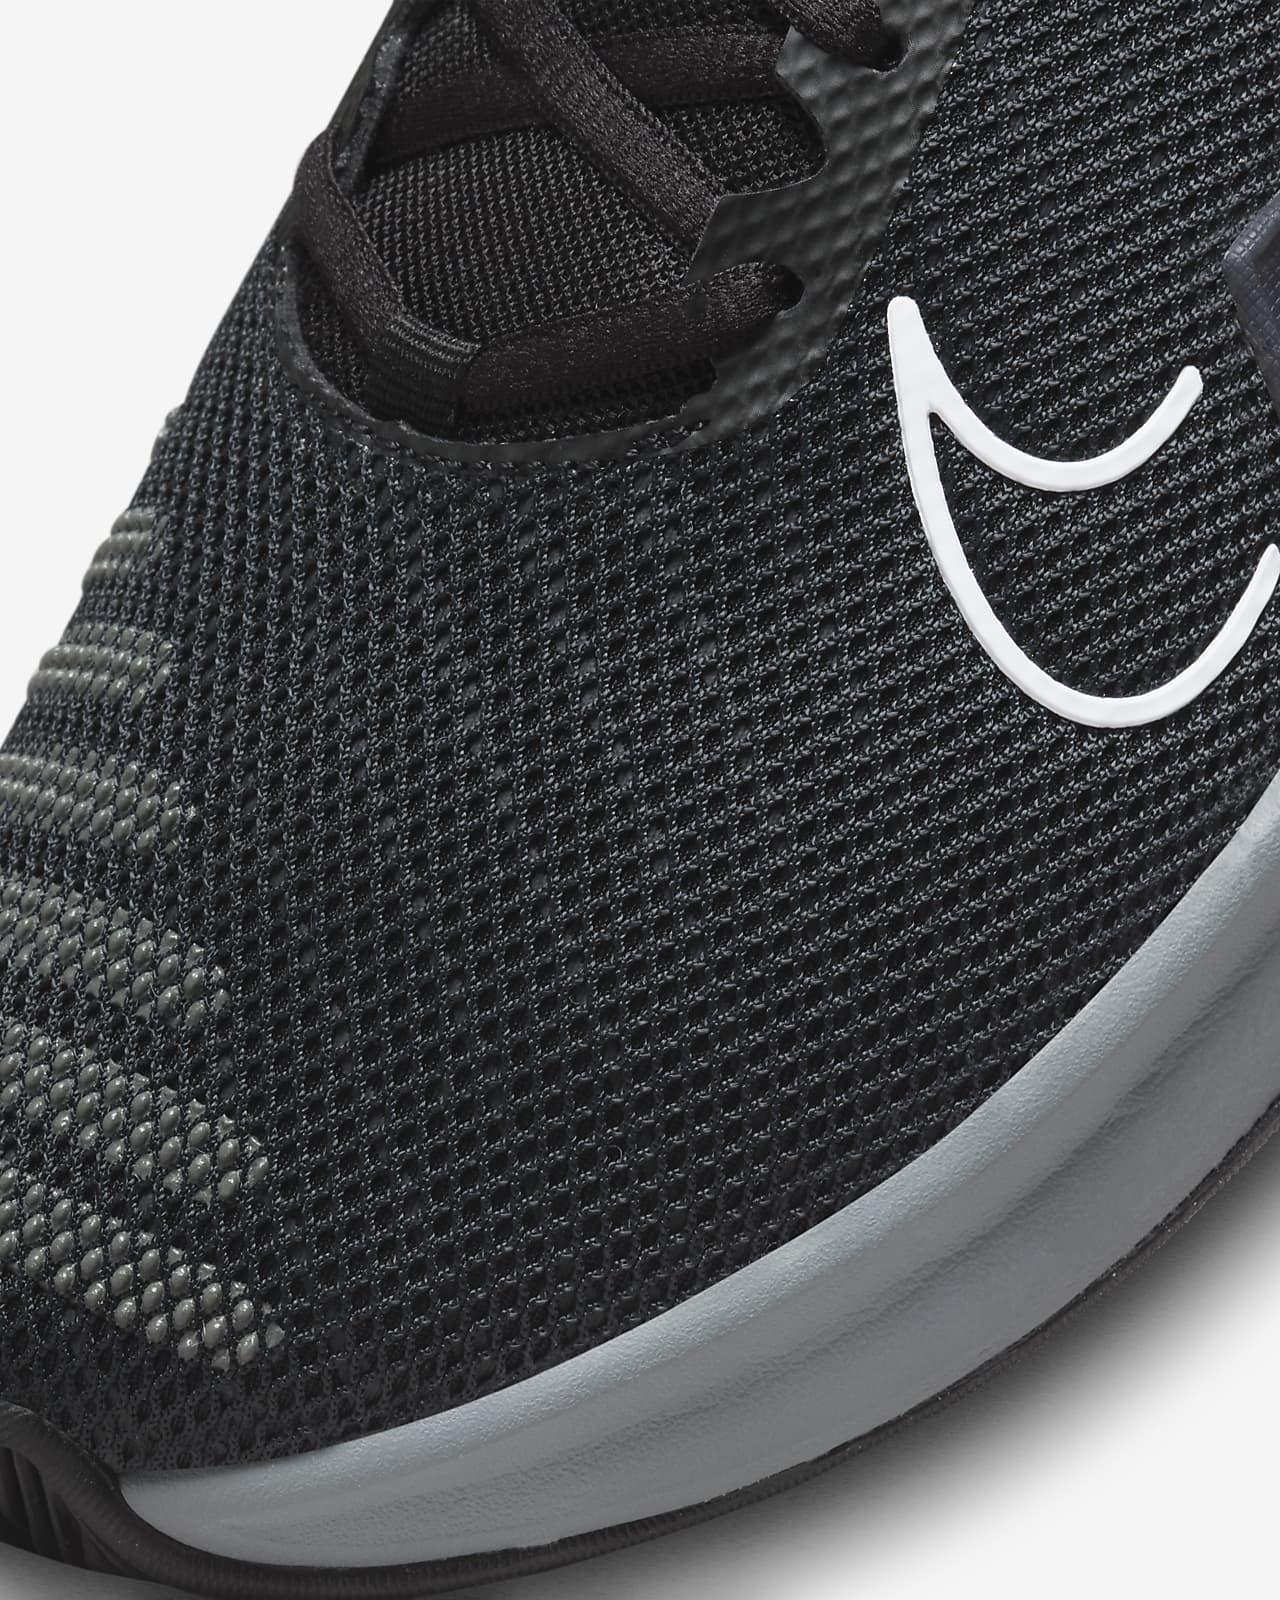 NIKE-Zapatillas deportivas para hombre, calzado deportivo para correr, METCON  9, novedad, Original - AliExpress